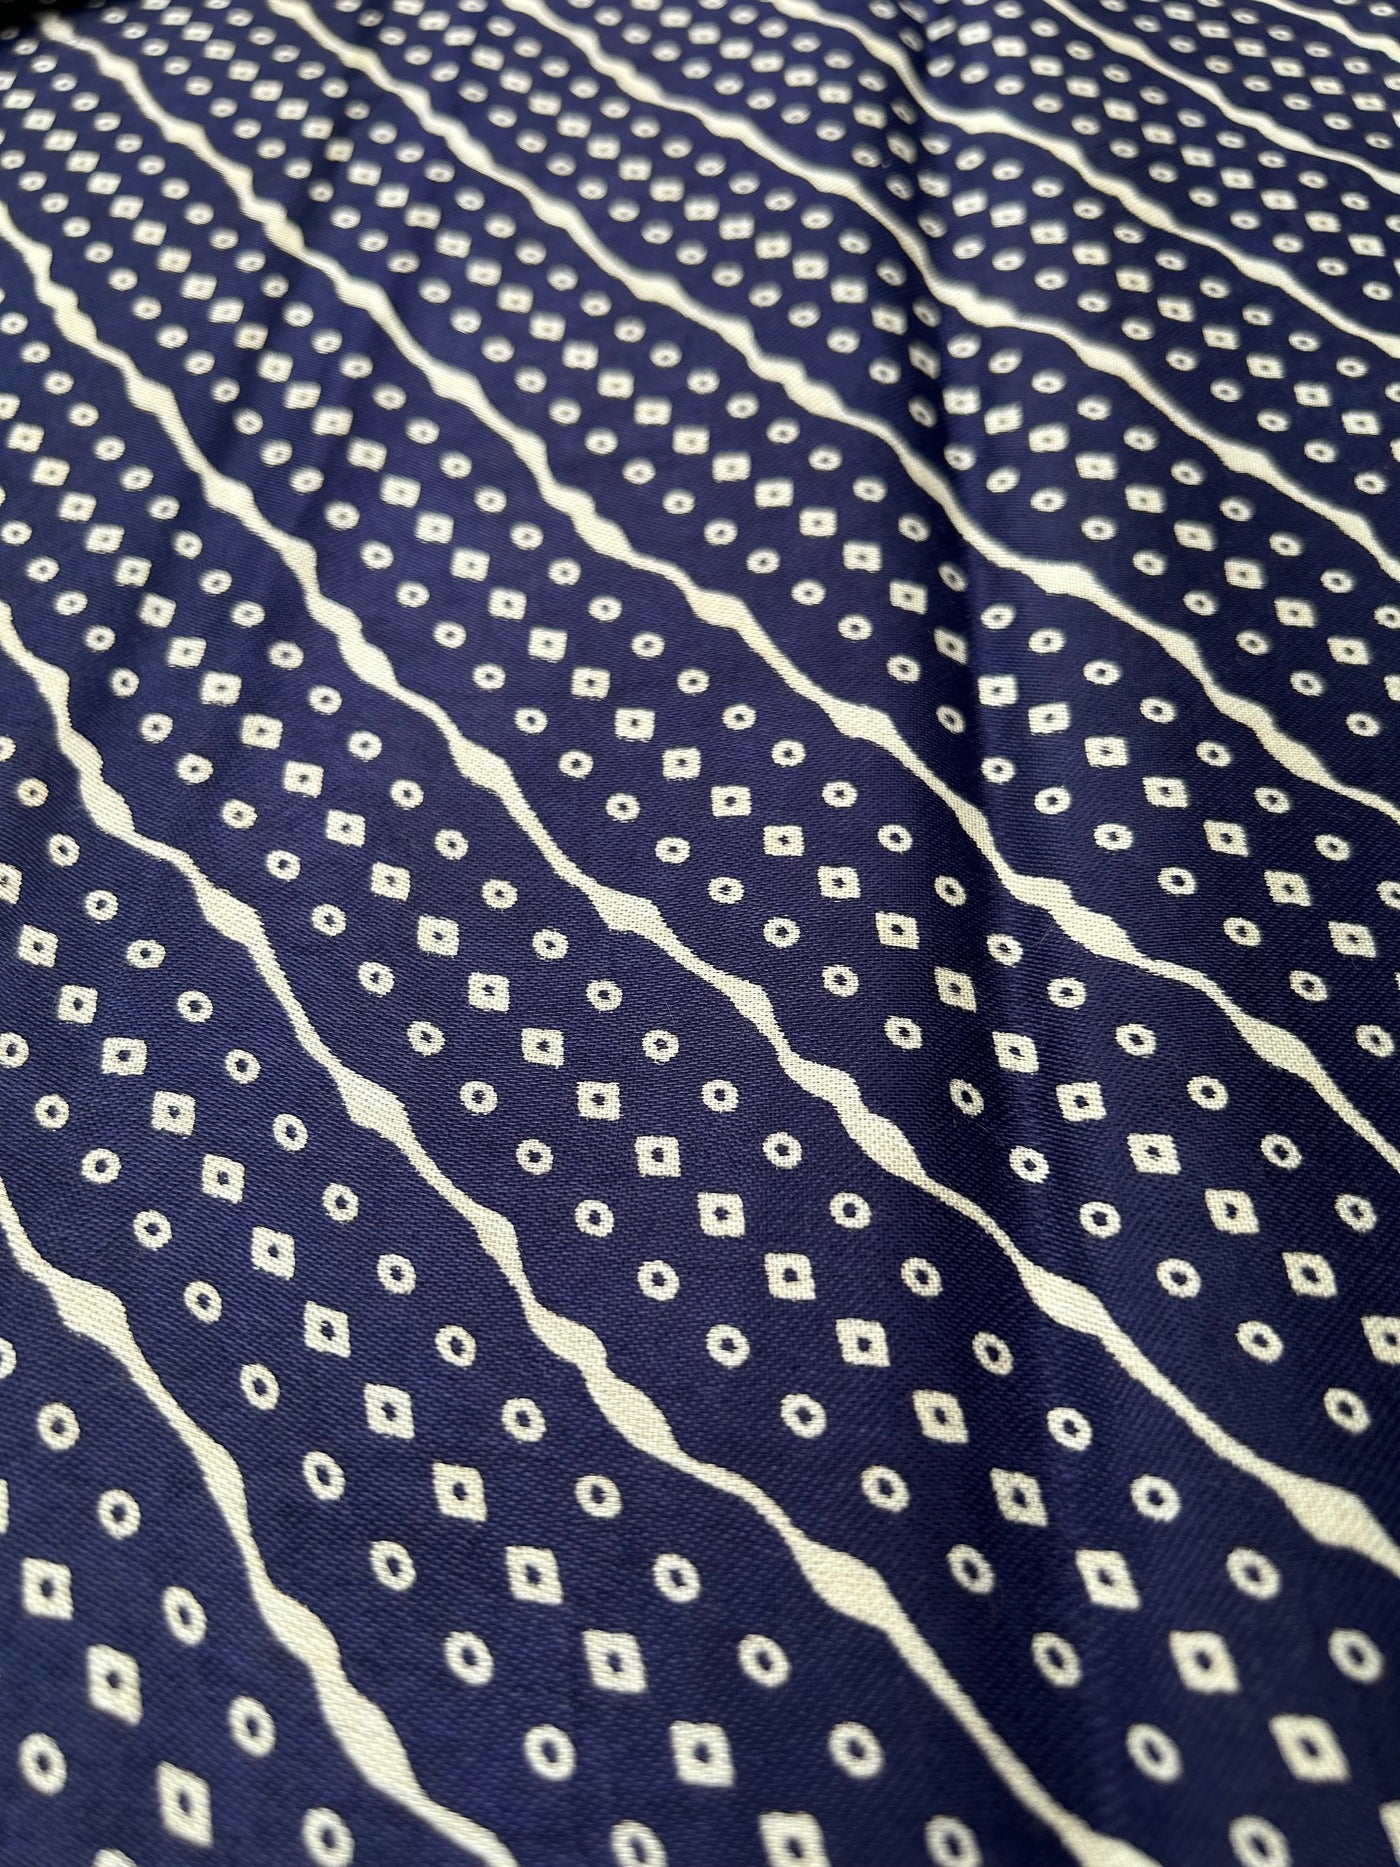 ALICE: Printed modal silk saree